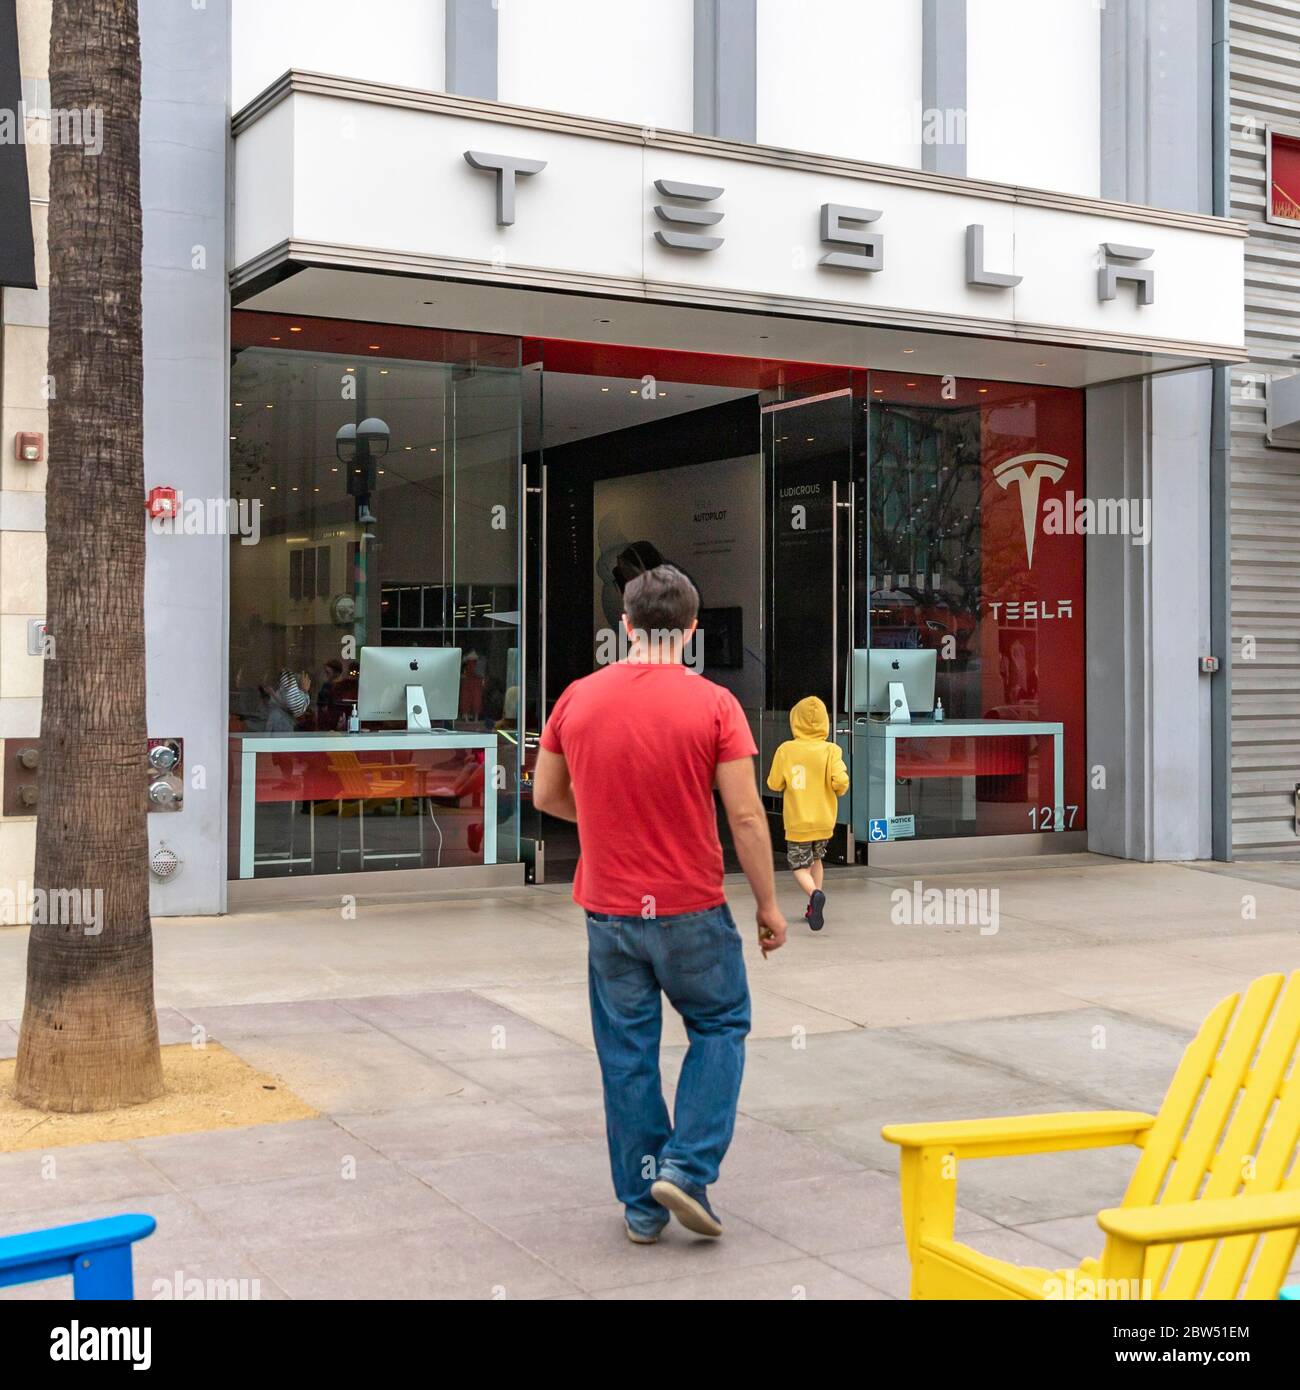 Santa Monica, Kalifornien, USA. April 2019. Tesla, Inc. (Früher Tesla Motors, Inc.) ist ein amerikanisches Elektrofahrzeug- und Energieunternehmen mit Sitz in Palo Alto, Kalifornien. Das Unternehmen ist spezialisiert auf die Herstellung von Elektrofahrzeugen, die Speicherung von Batterieenergie vom Haus bis zum Netz und durch die Übernahme von SolarCity, Solarpanel und Solardachziegel. Kredit: Alexey Bychkov/ZUMA Wire/Alamy Live News Stockfoto